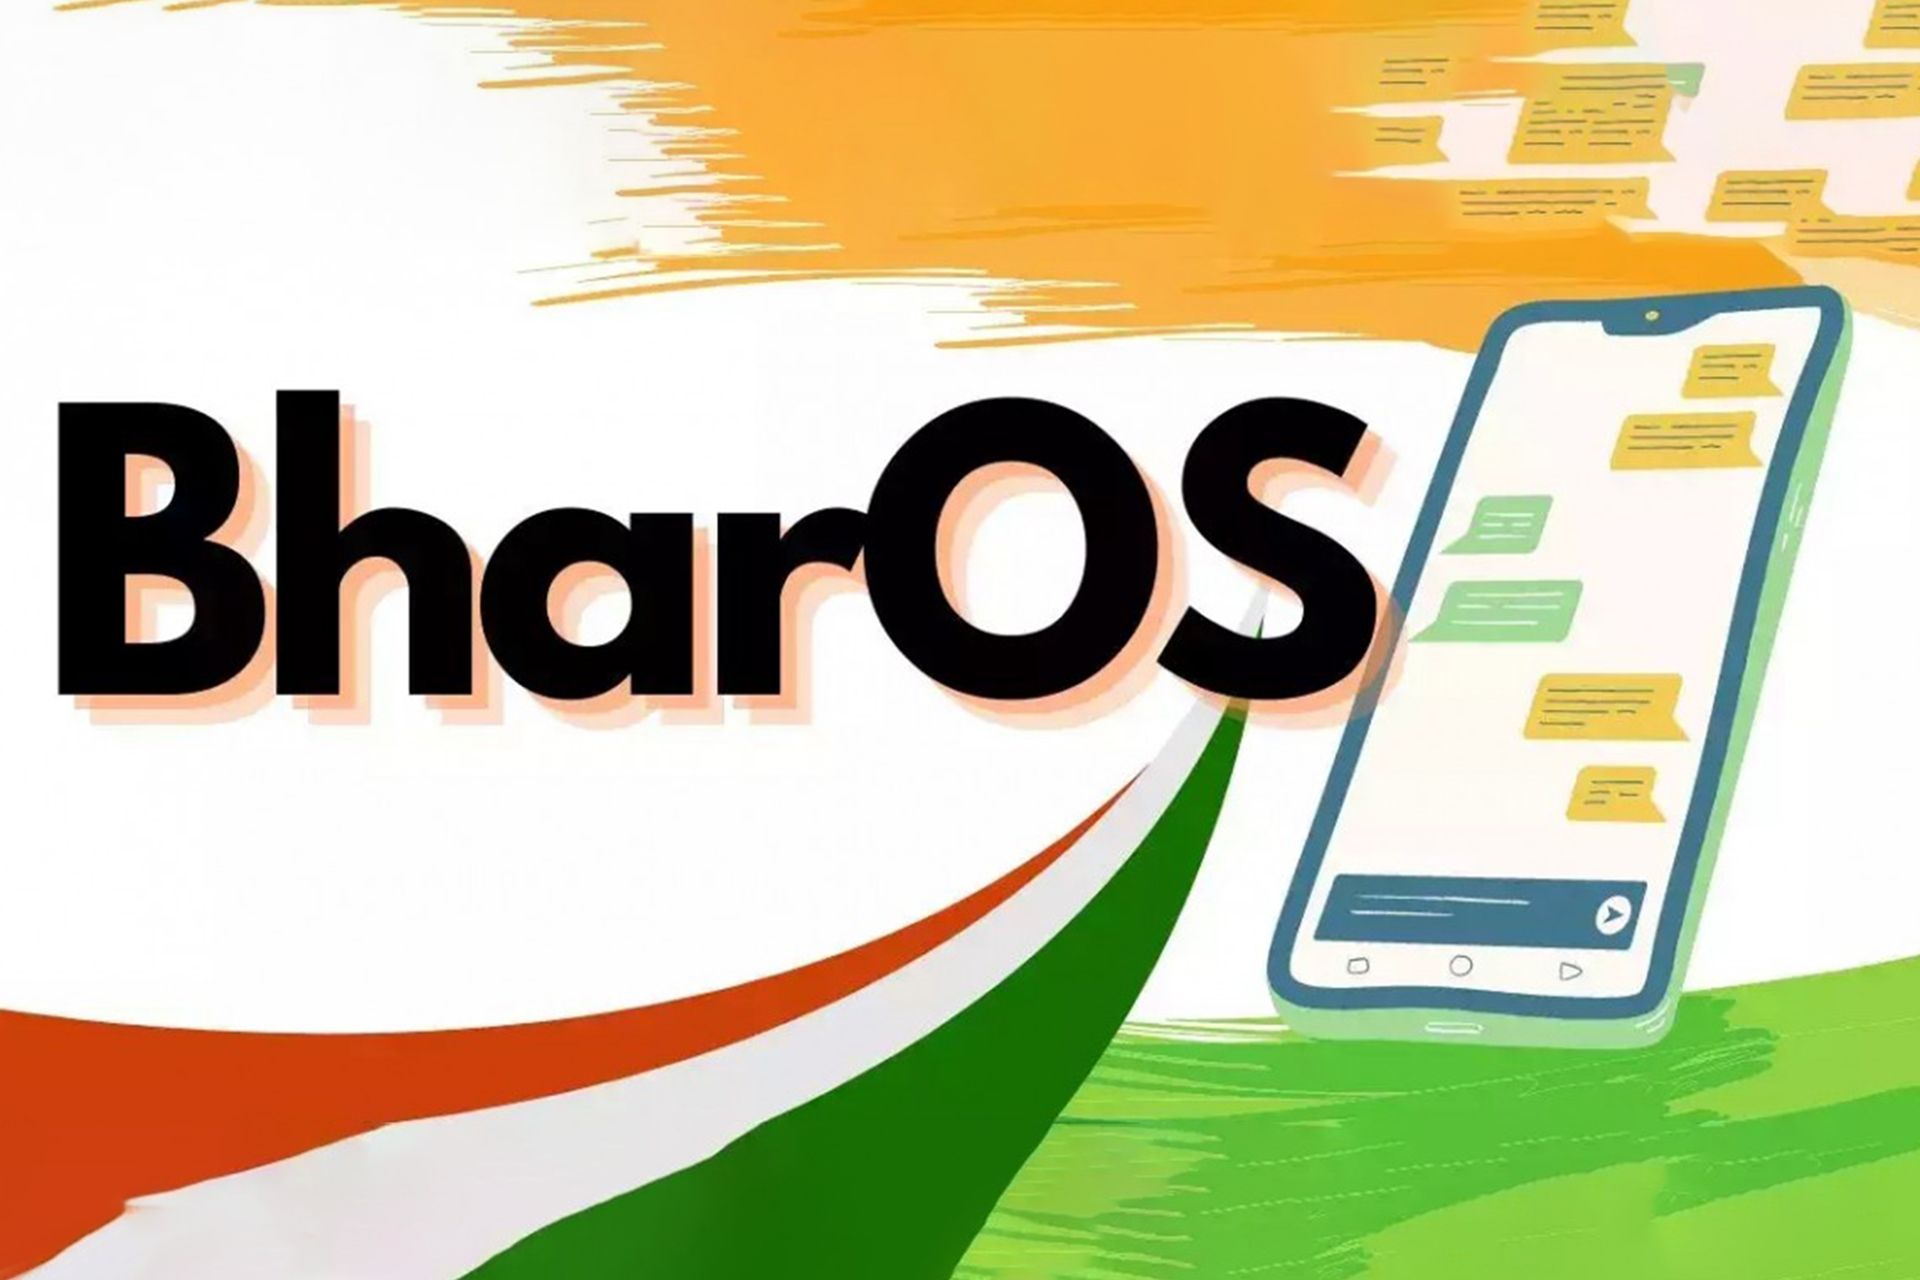 گوشی هوشمند در سمت راست و لوگوی BharOS در چپ صفحه به همراه نقشه هند